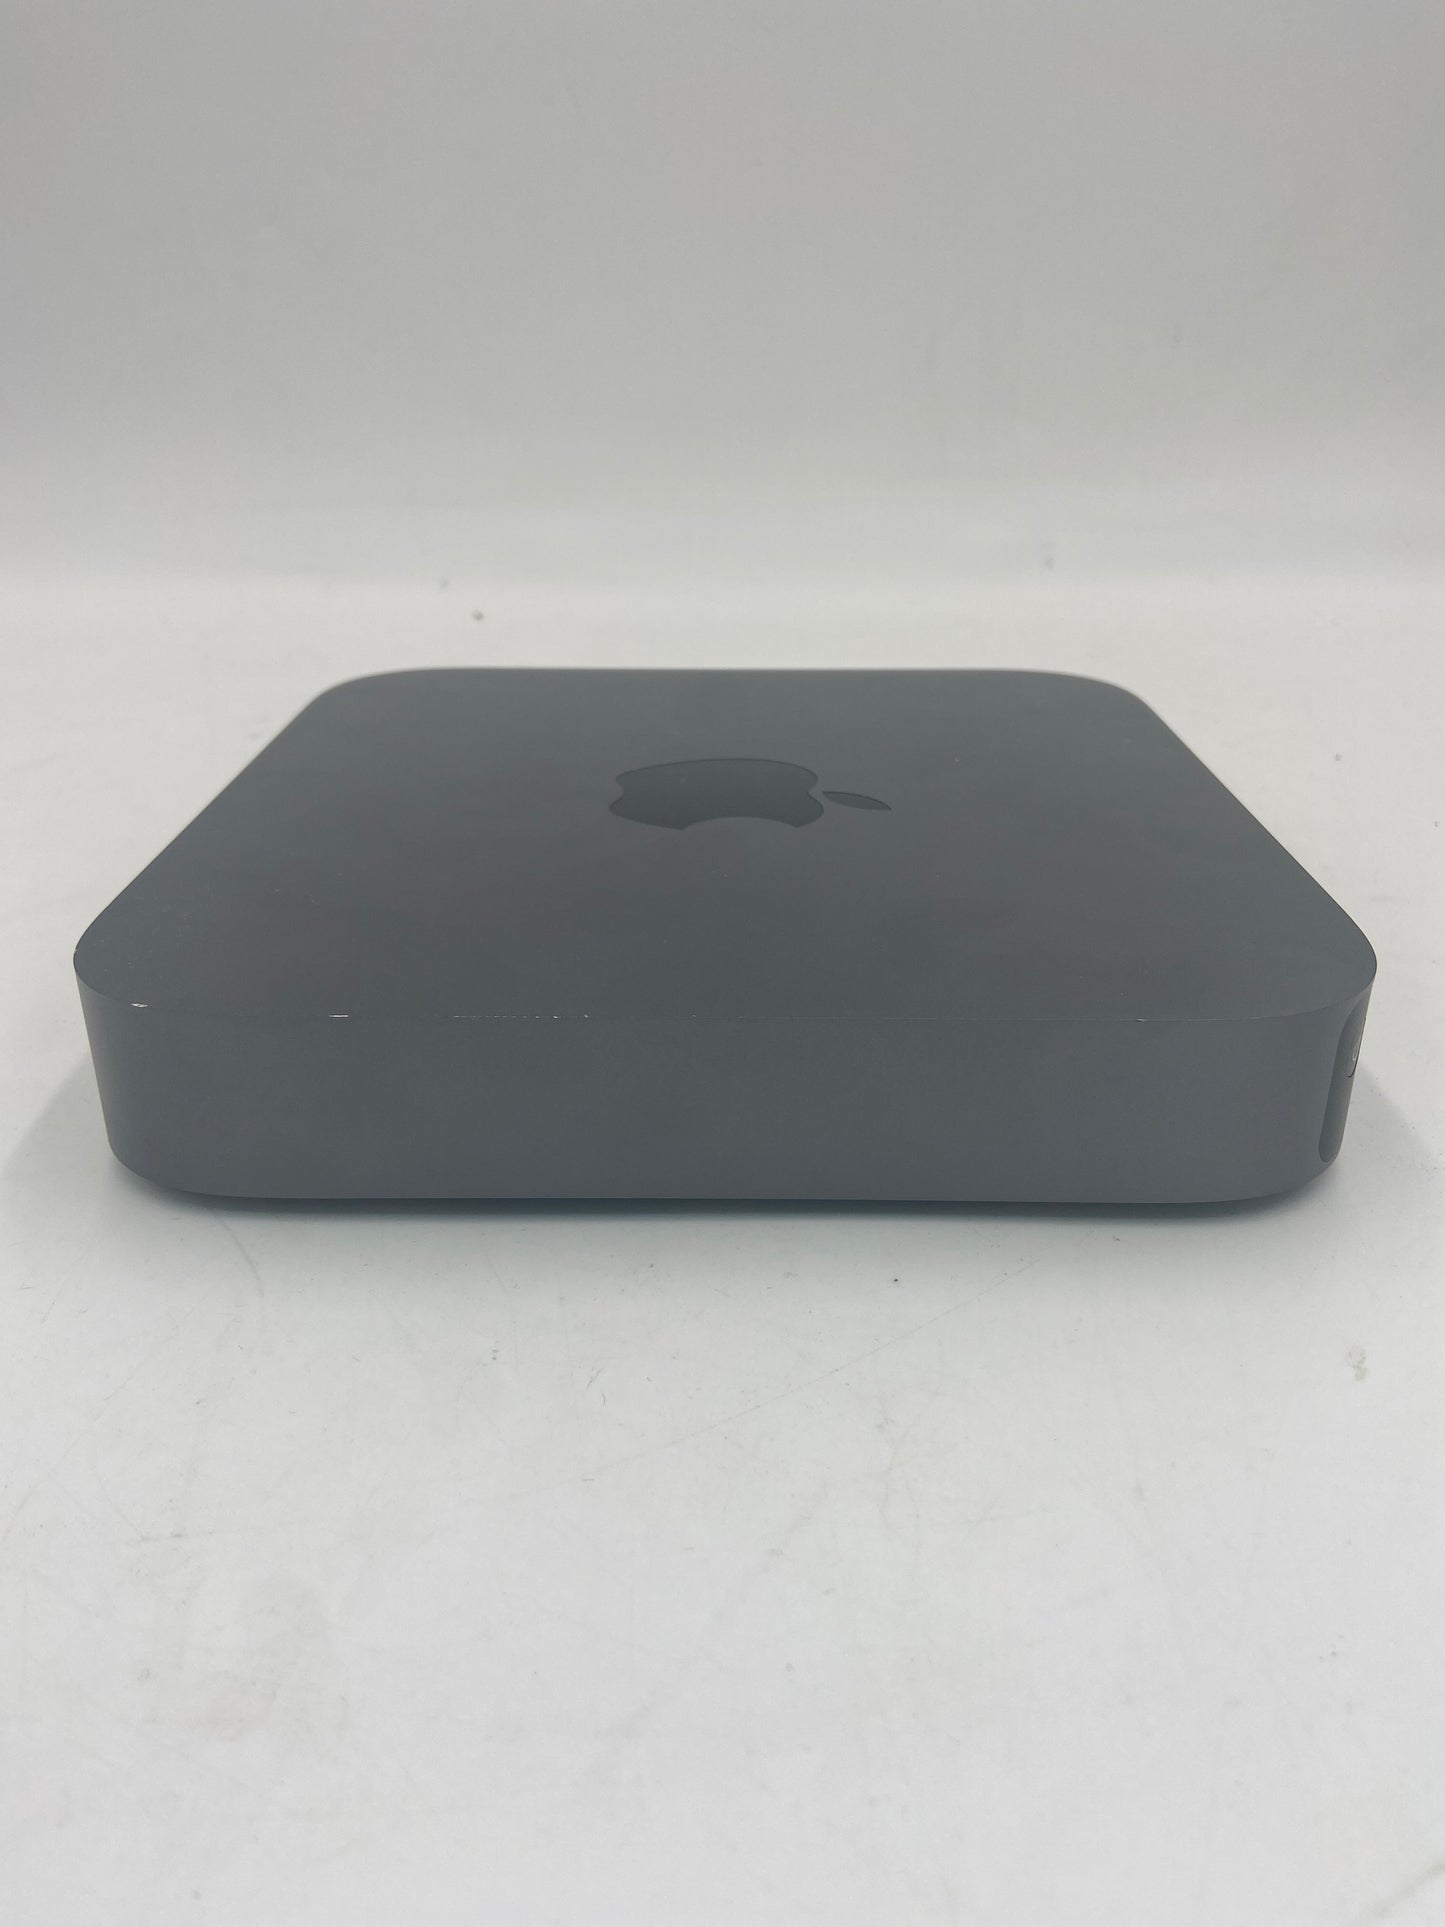 2018 Apple Mac Mini i7 3.0GHz 16GB RAM 256GB SSD Space Gray A1993